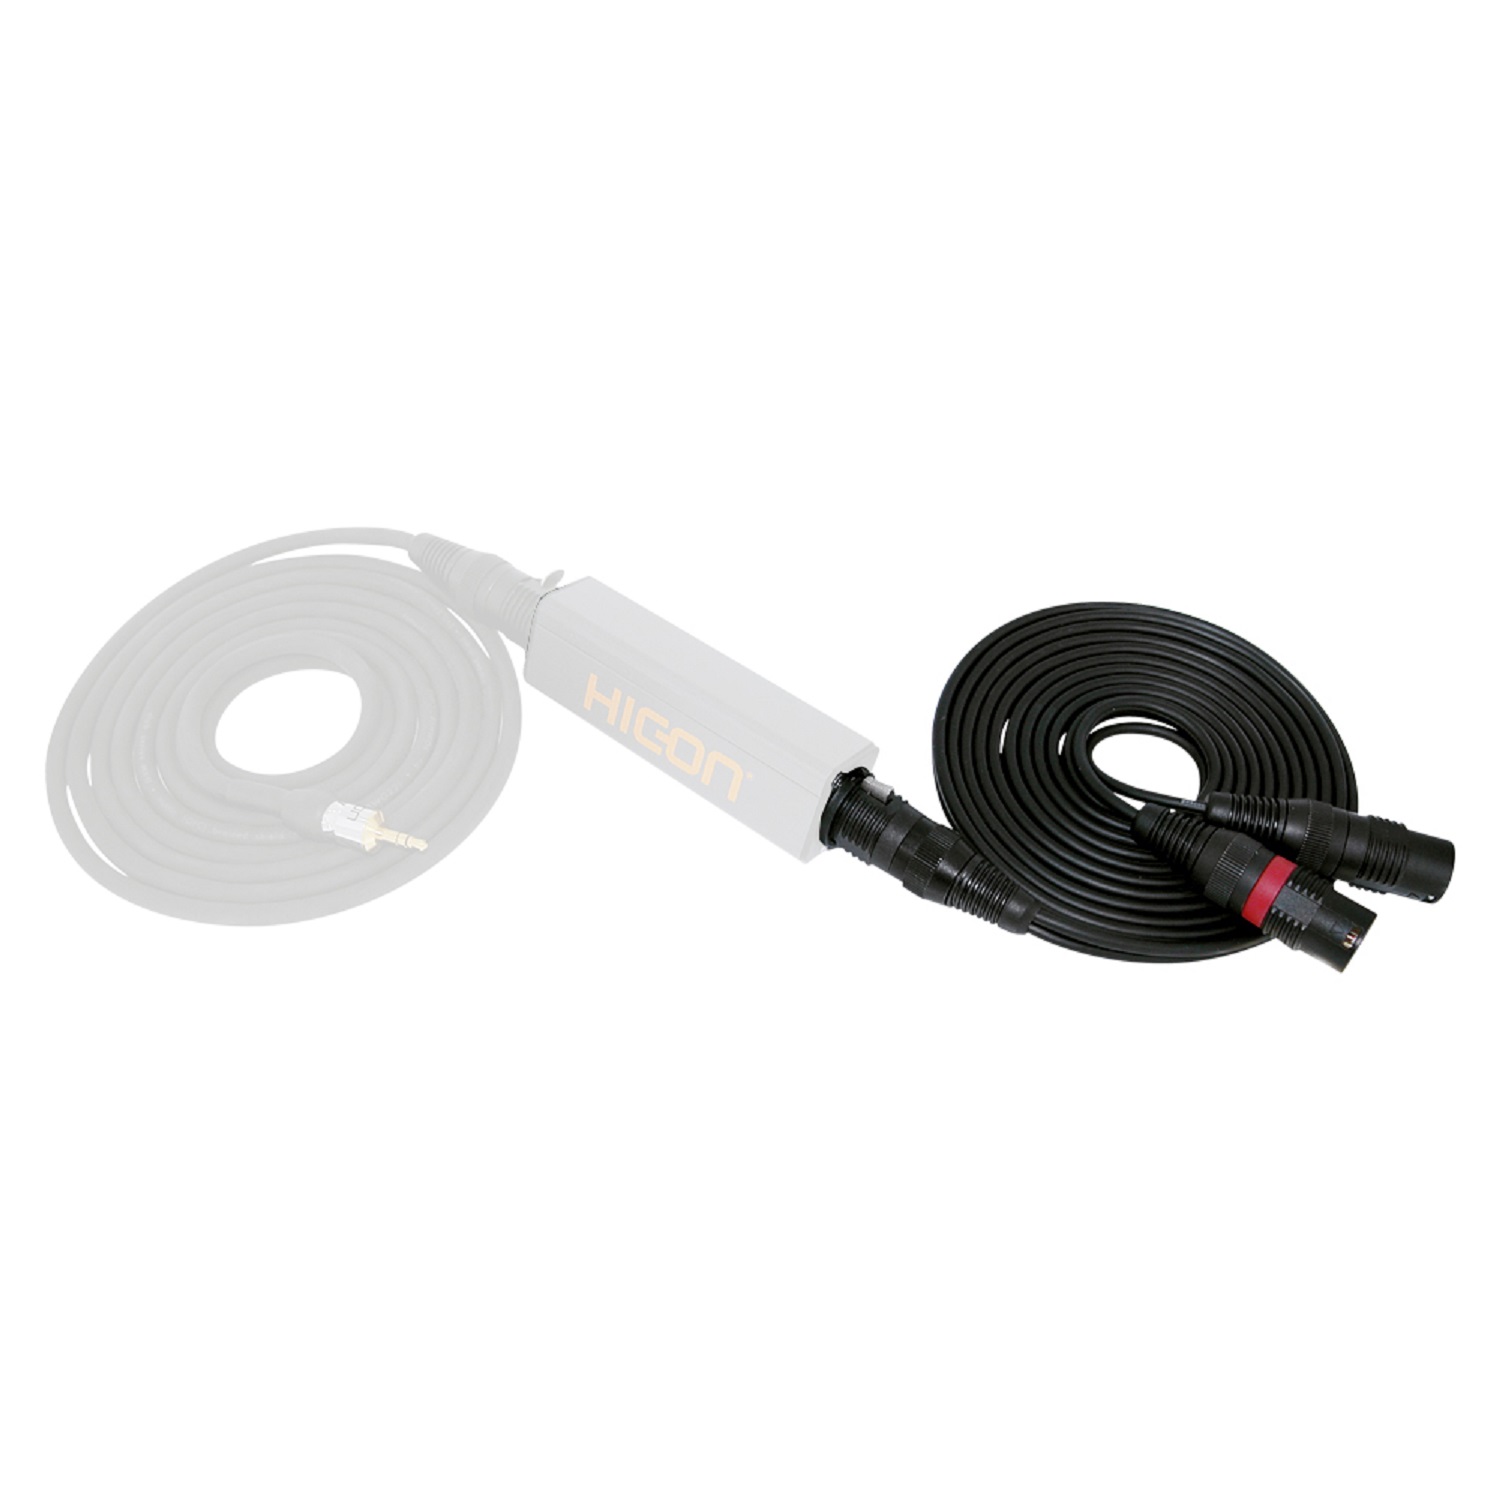 Adapter cablex 0,22 mm² | XLR / XLR, HICON